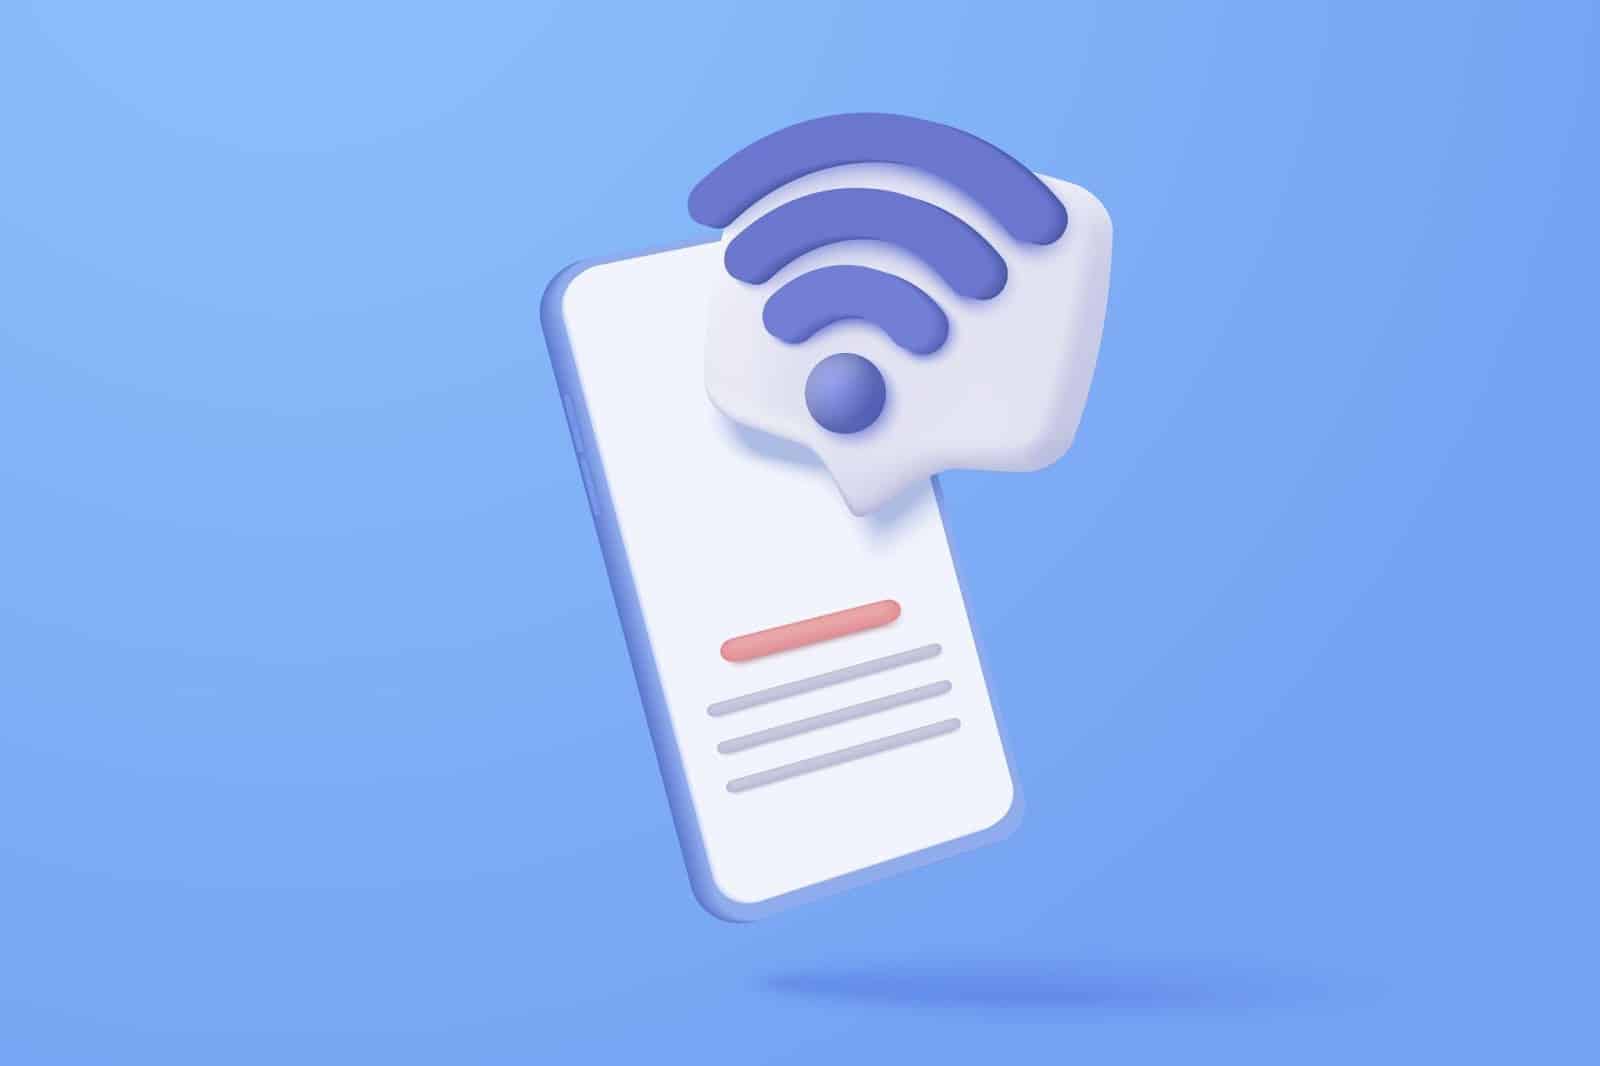 Hackear movil por WiFi puede tener un montón de utilidades, y todas ellas tienen su propia importancia. Si alguna de estas 4 razones coincide con las tuyas, empieza a plantearte la posibilidad de hacer un rastreo a través del Wi-Fi: